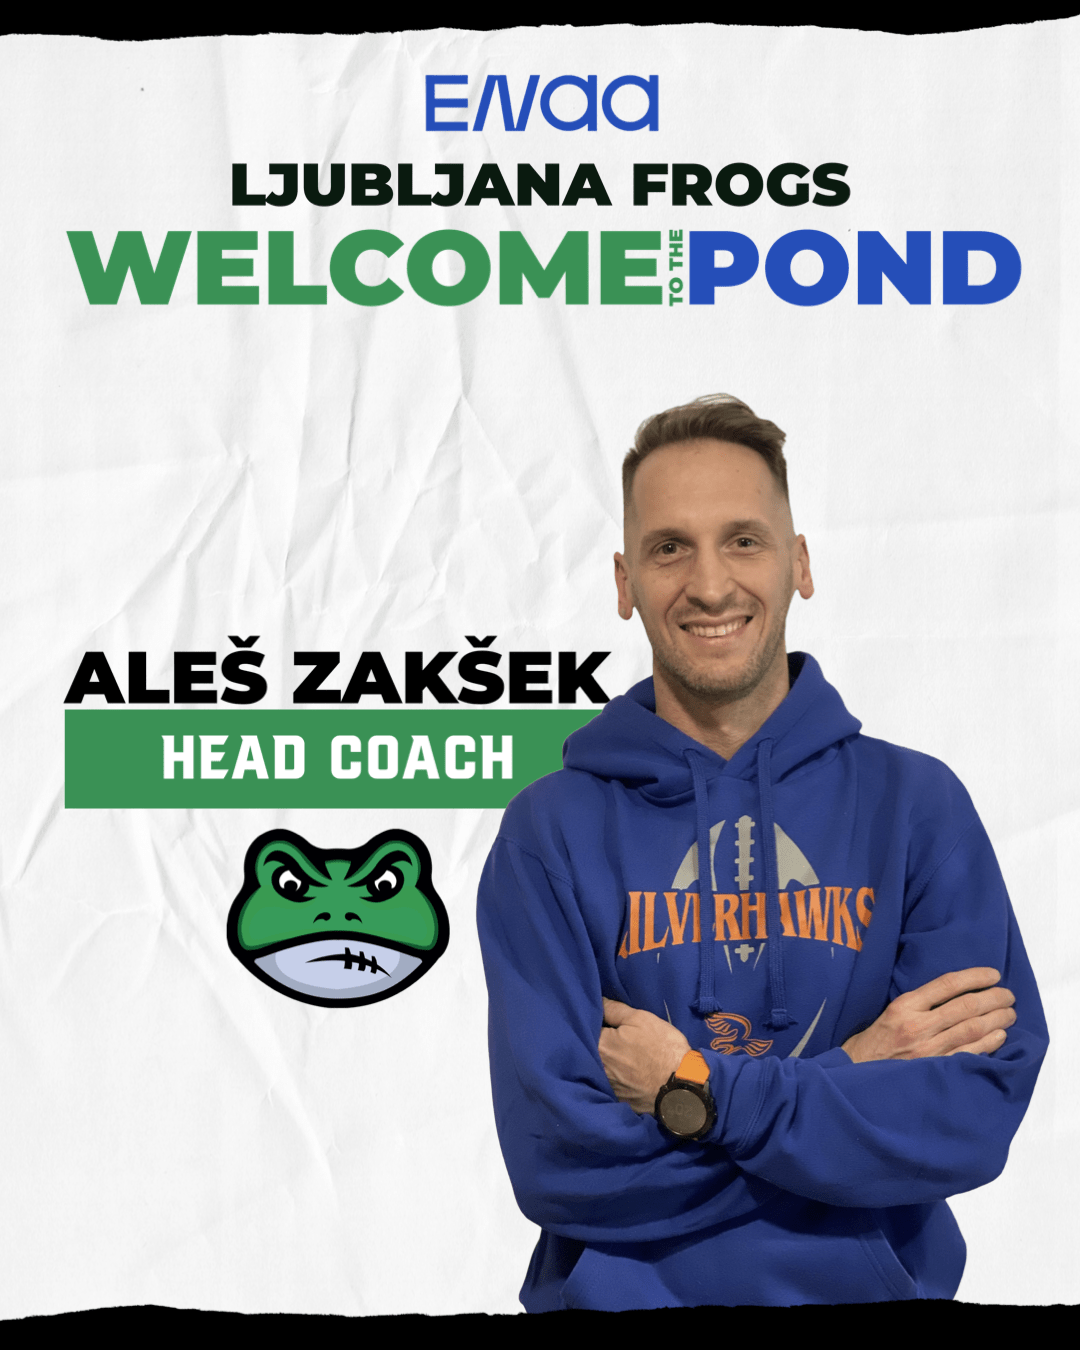 Aleš Zakšek is new flag football head coach of Ljubljana Frogs